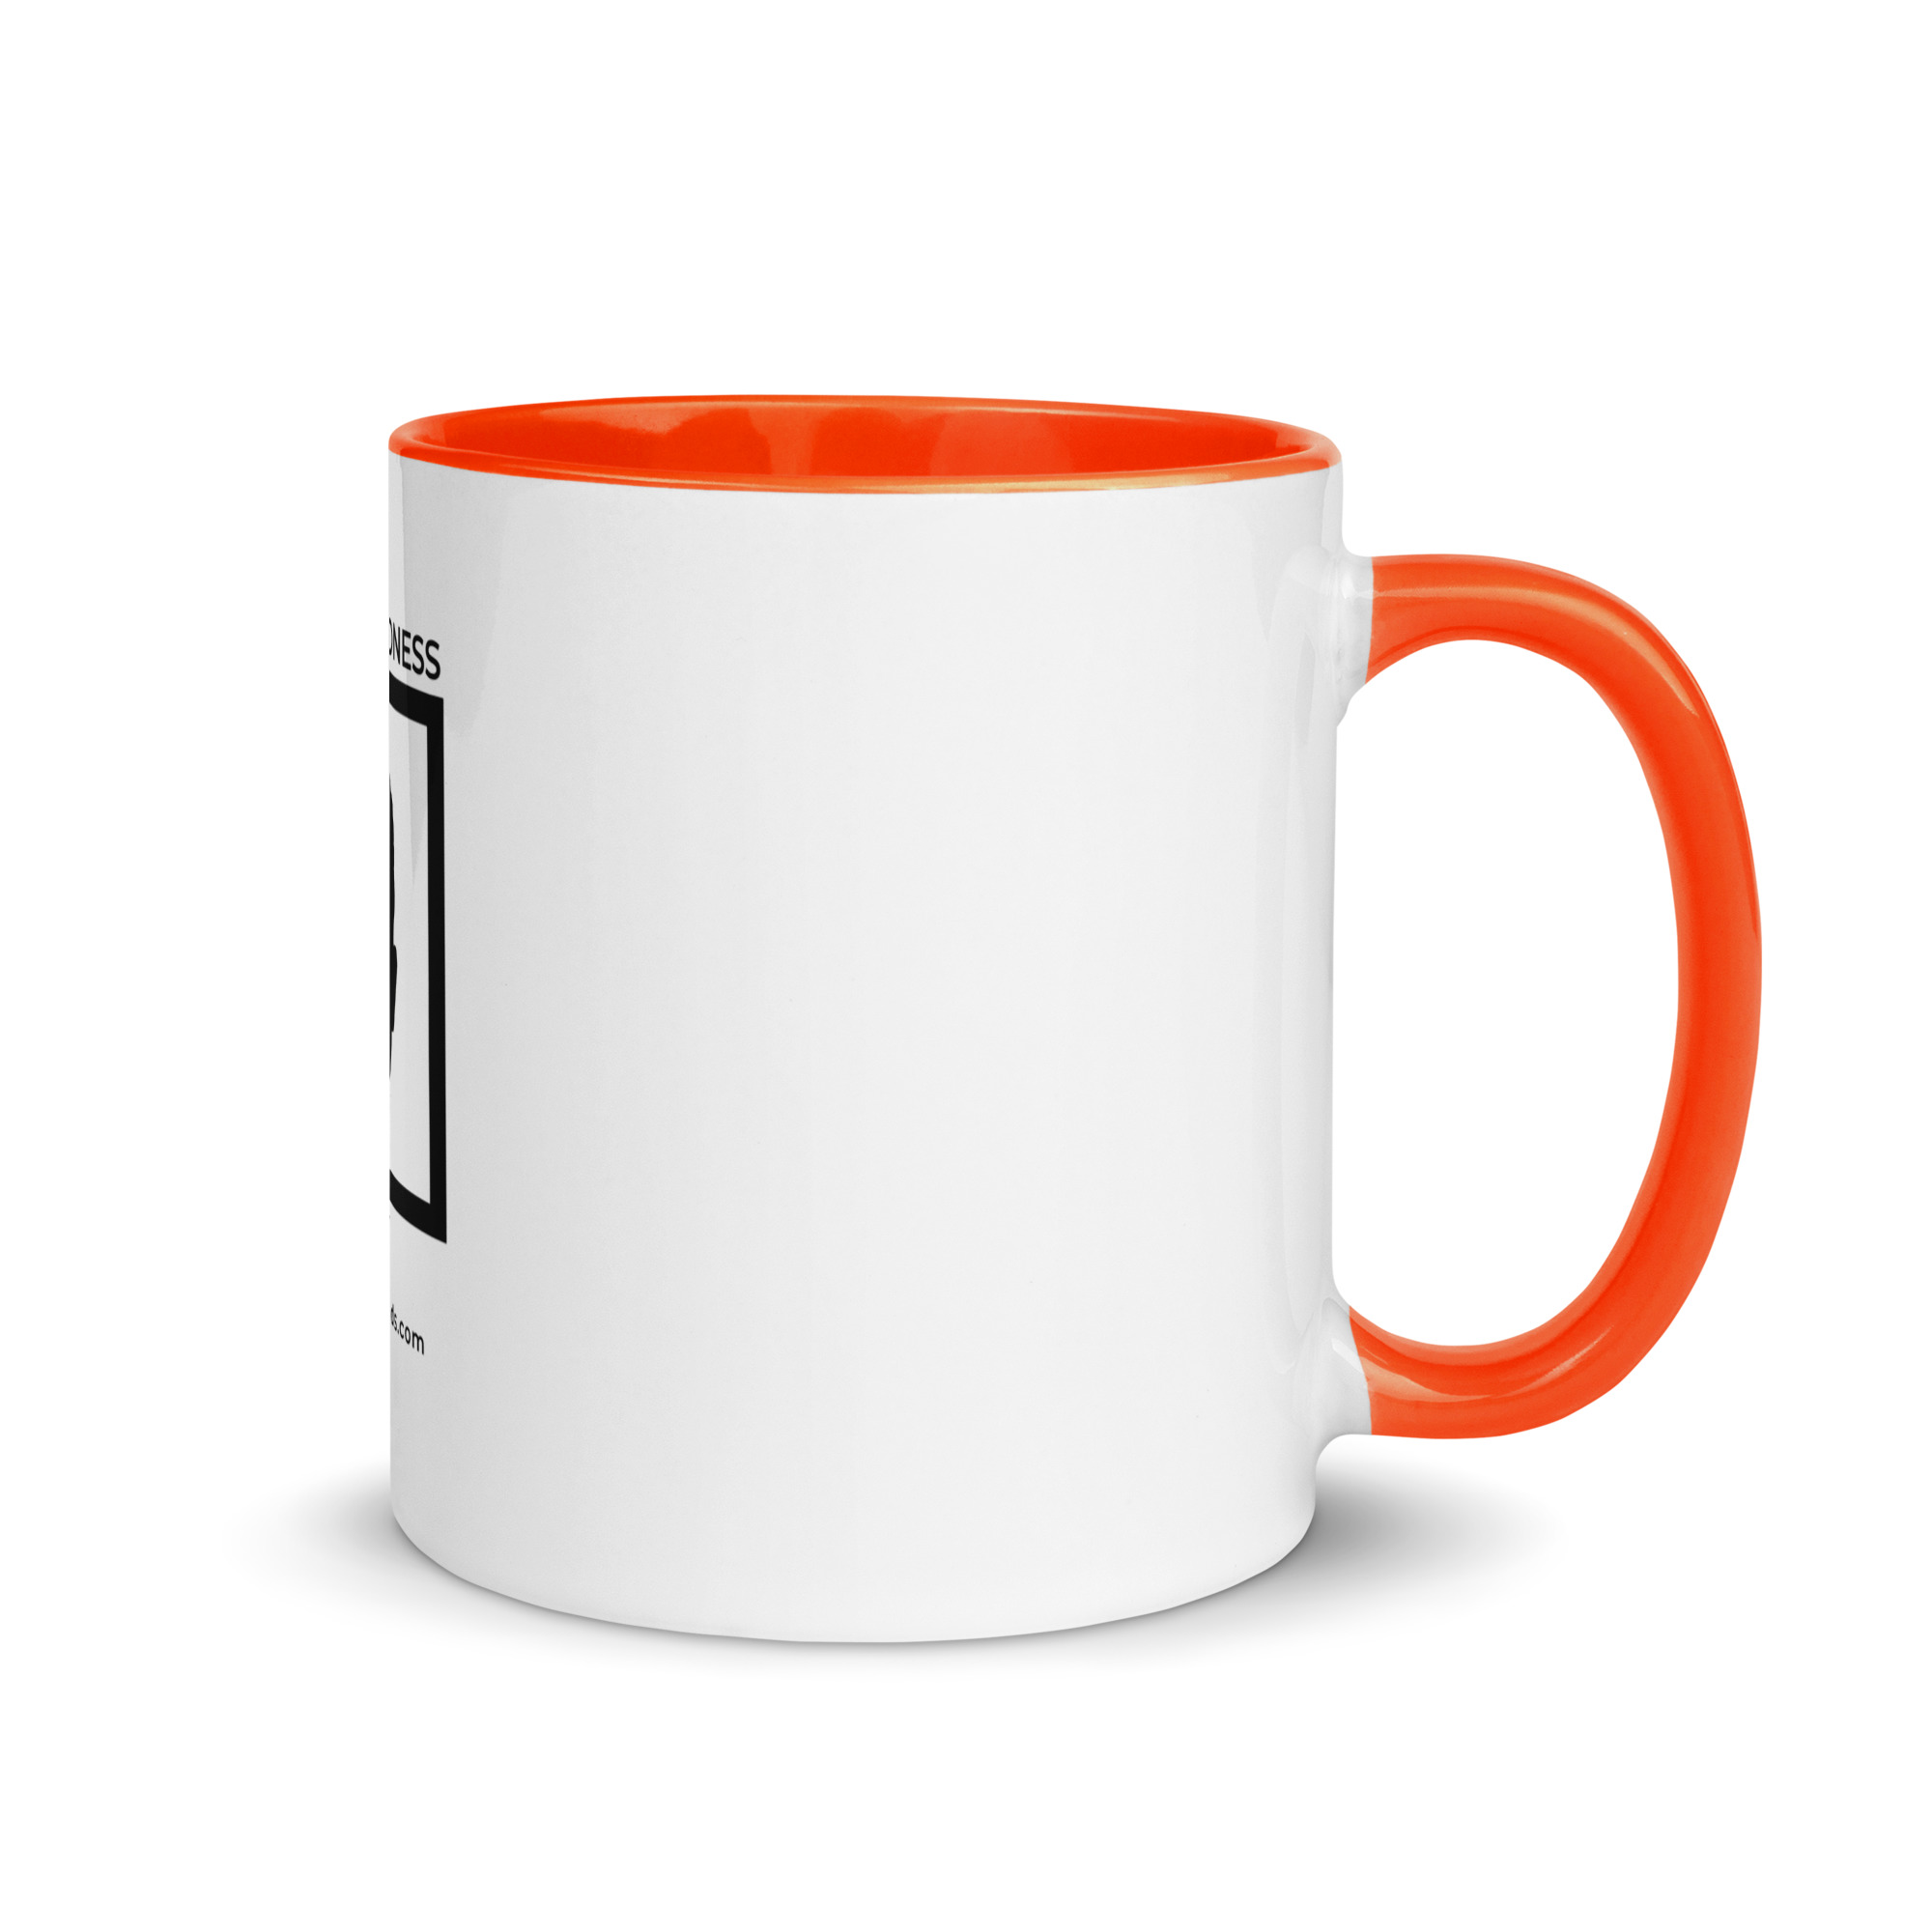 white-ceramic-mug-with-color-inside-orange-11-oz-right-6522a1a403f8d.jpg